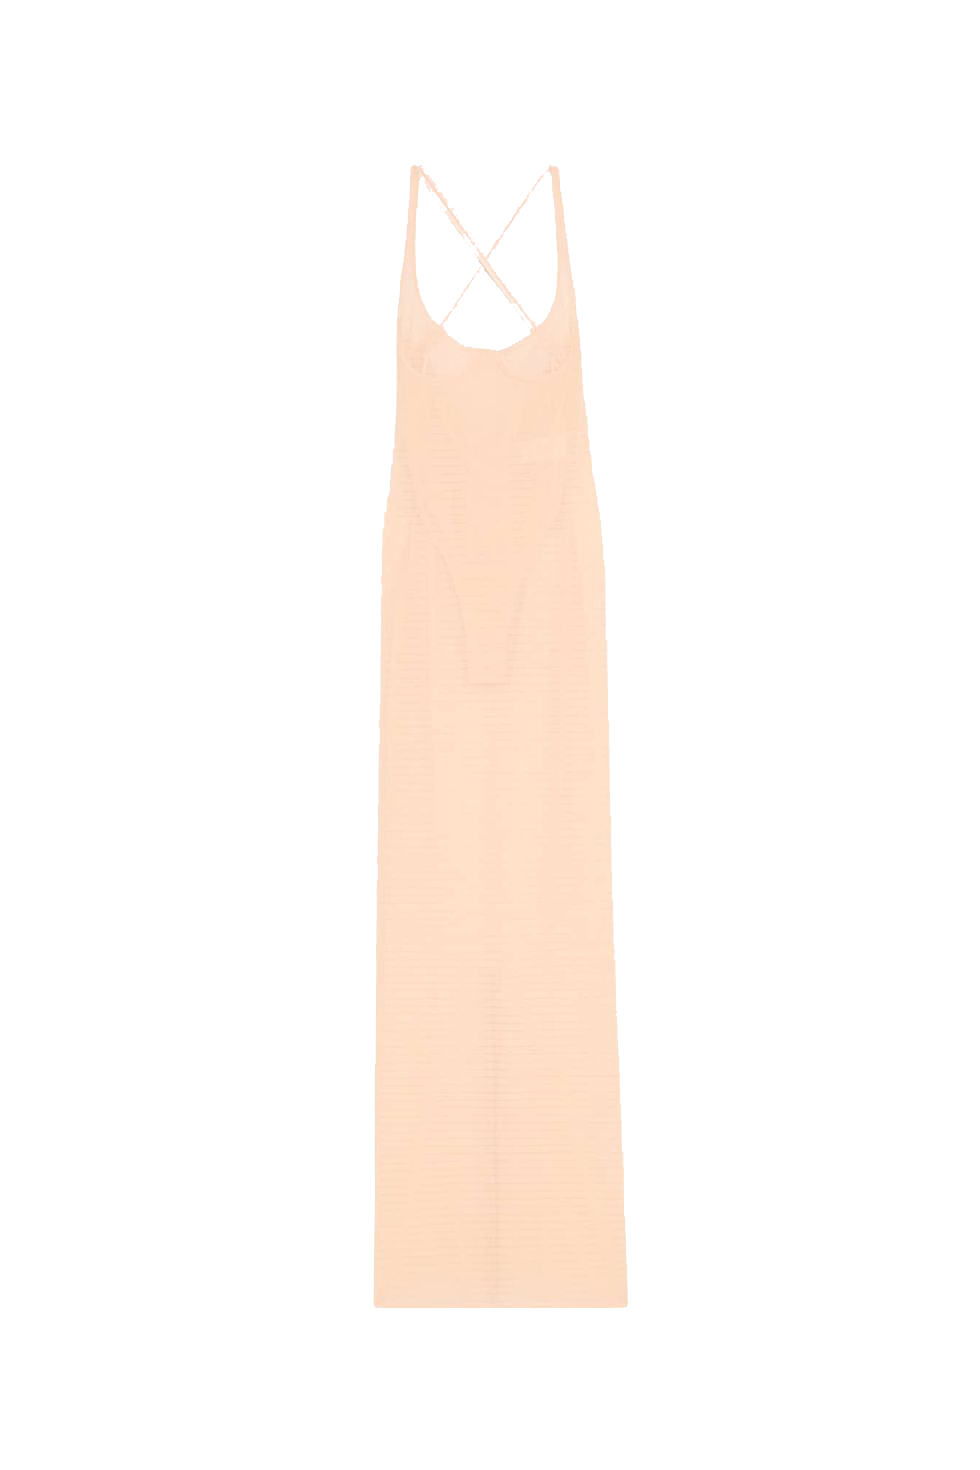 Самый смелый тренд: «голое» платье в стиле Кейт Мосс